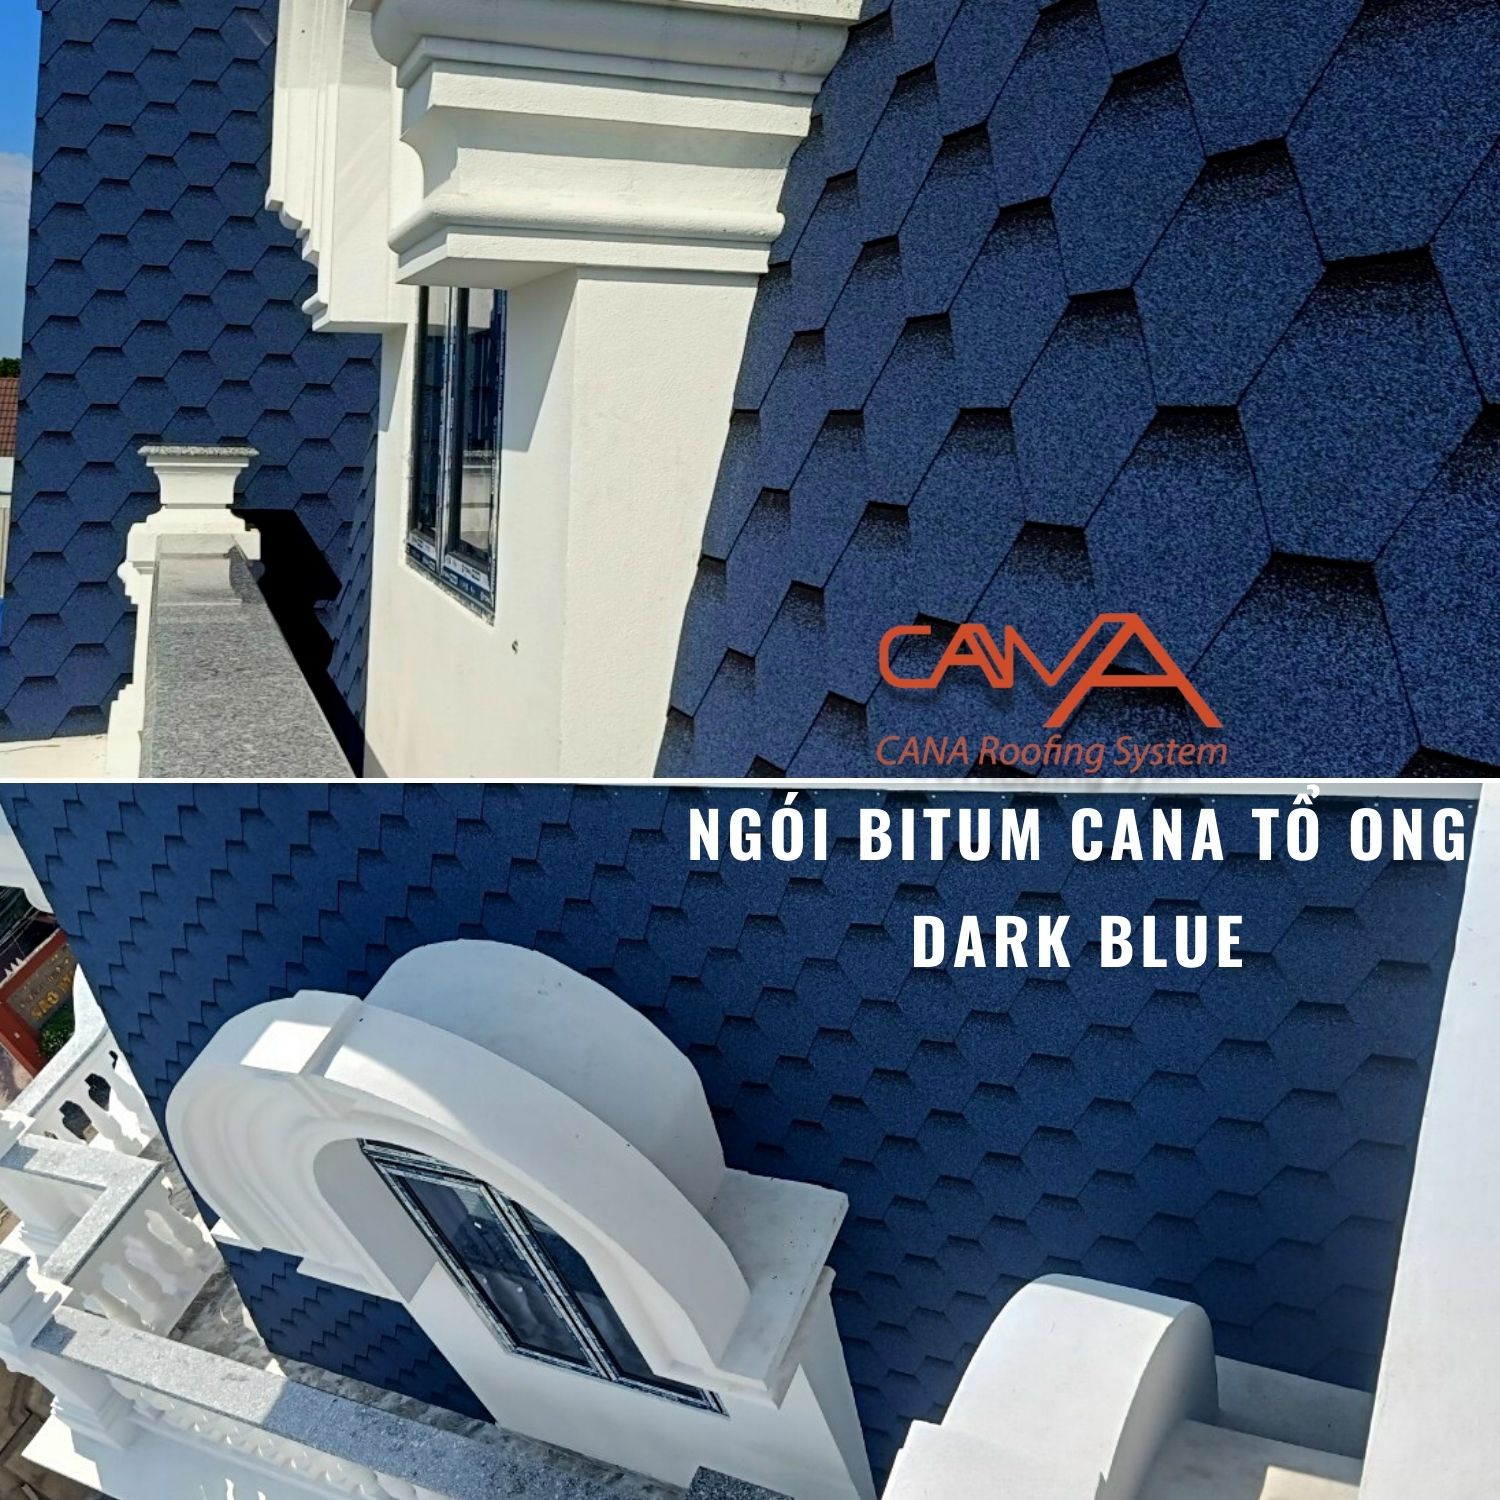 Ngói bitum cana tổ ong dark blue - ngói lợp phủ đá màu xanh dương Hàn Quốc chống thấm và trang trí mái biệt thự, nhà phố, nhà gỗ, bungalow, đóng gói 22 tấm ngói/gói/phủ 3m2 mái